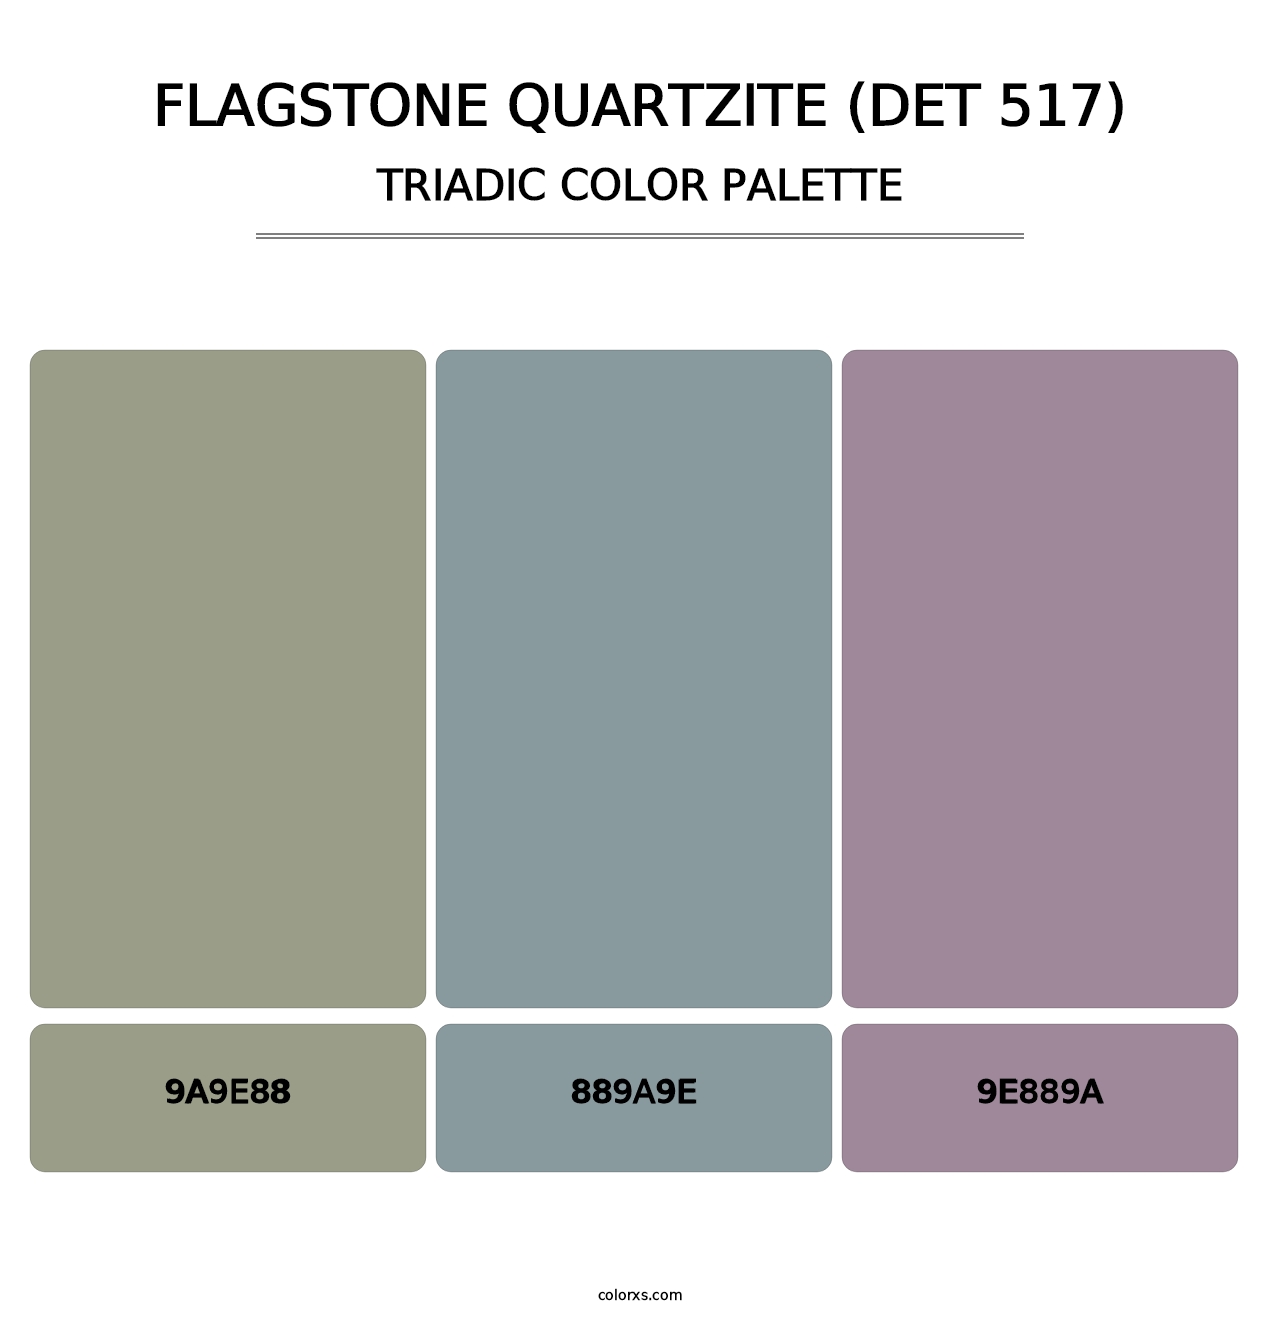 Flagstone Quartzite (DET 517) - Triadic Color Palette